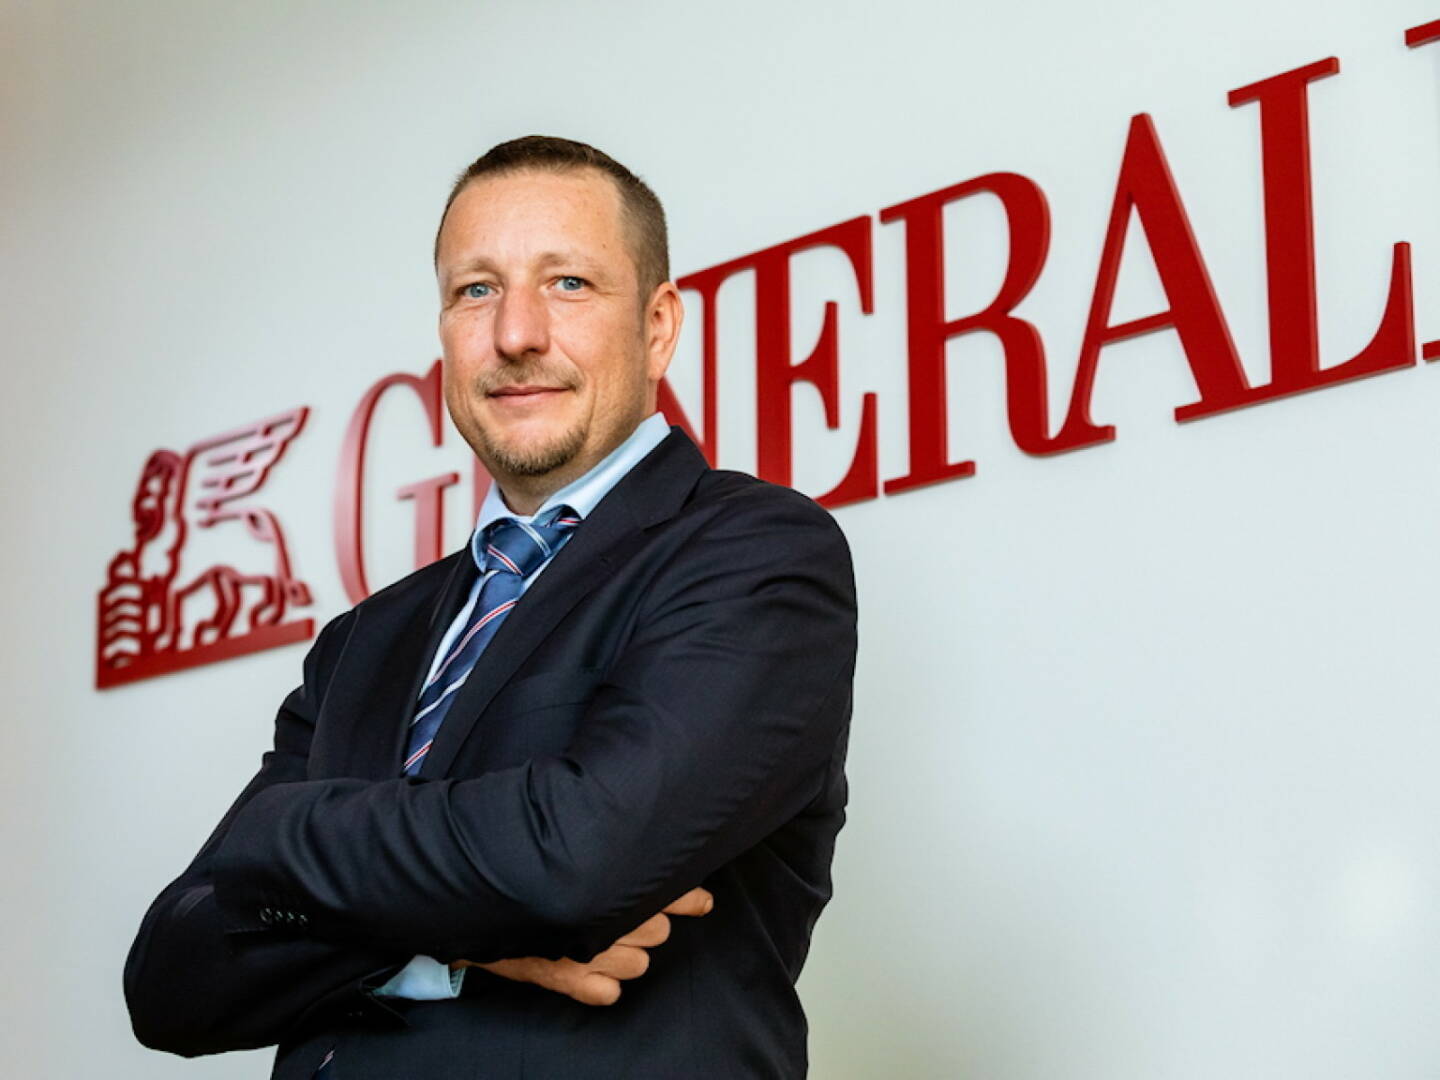 An der Spitze der Generali Versicherung in Österreich vollzieht sich ein Generationenwechsel. Wie im März 2020 angekündigt, übernimmt ab 1. Mai 2020 Gregor Pilgram den Vorstandsvorsitz der Generali Versicherung AG. Credit: Generali